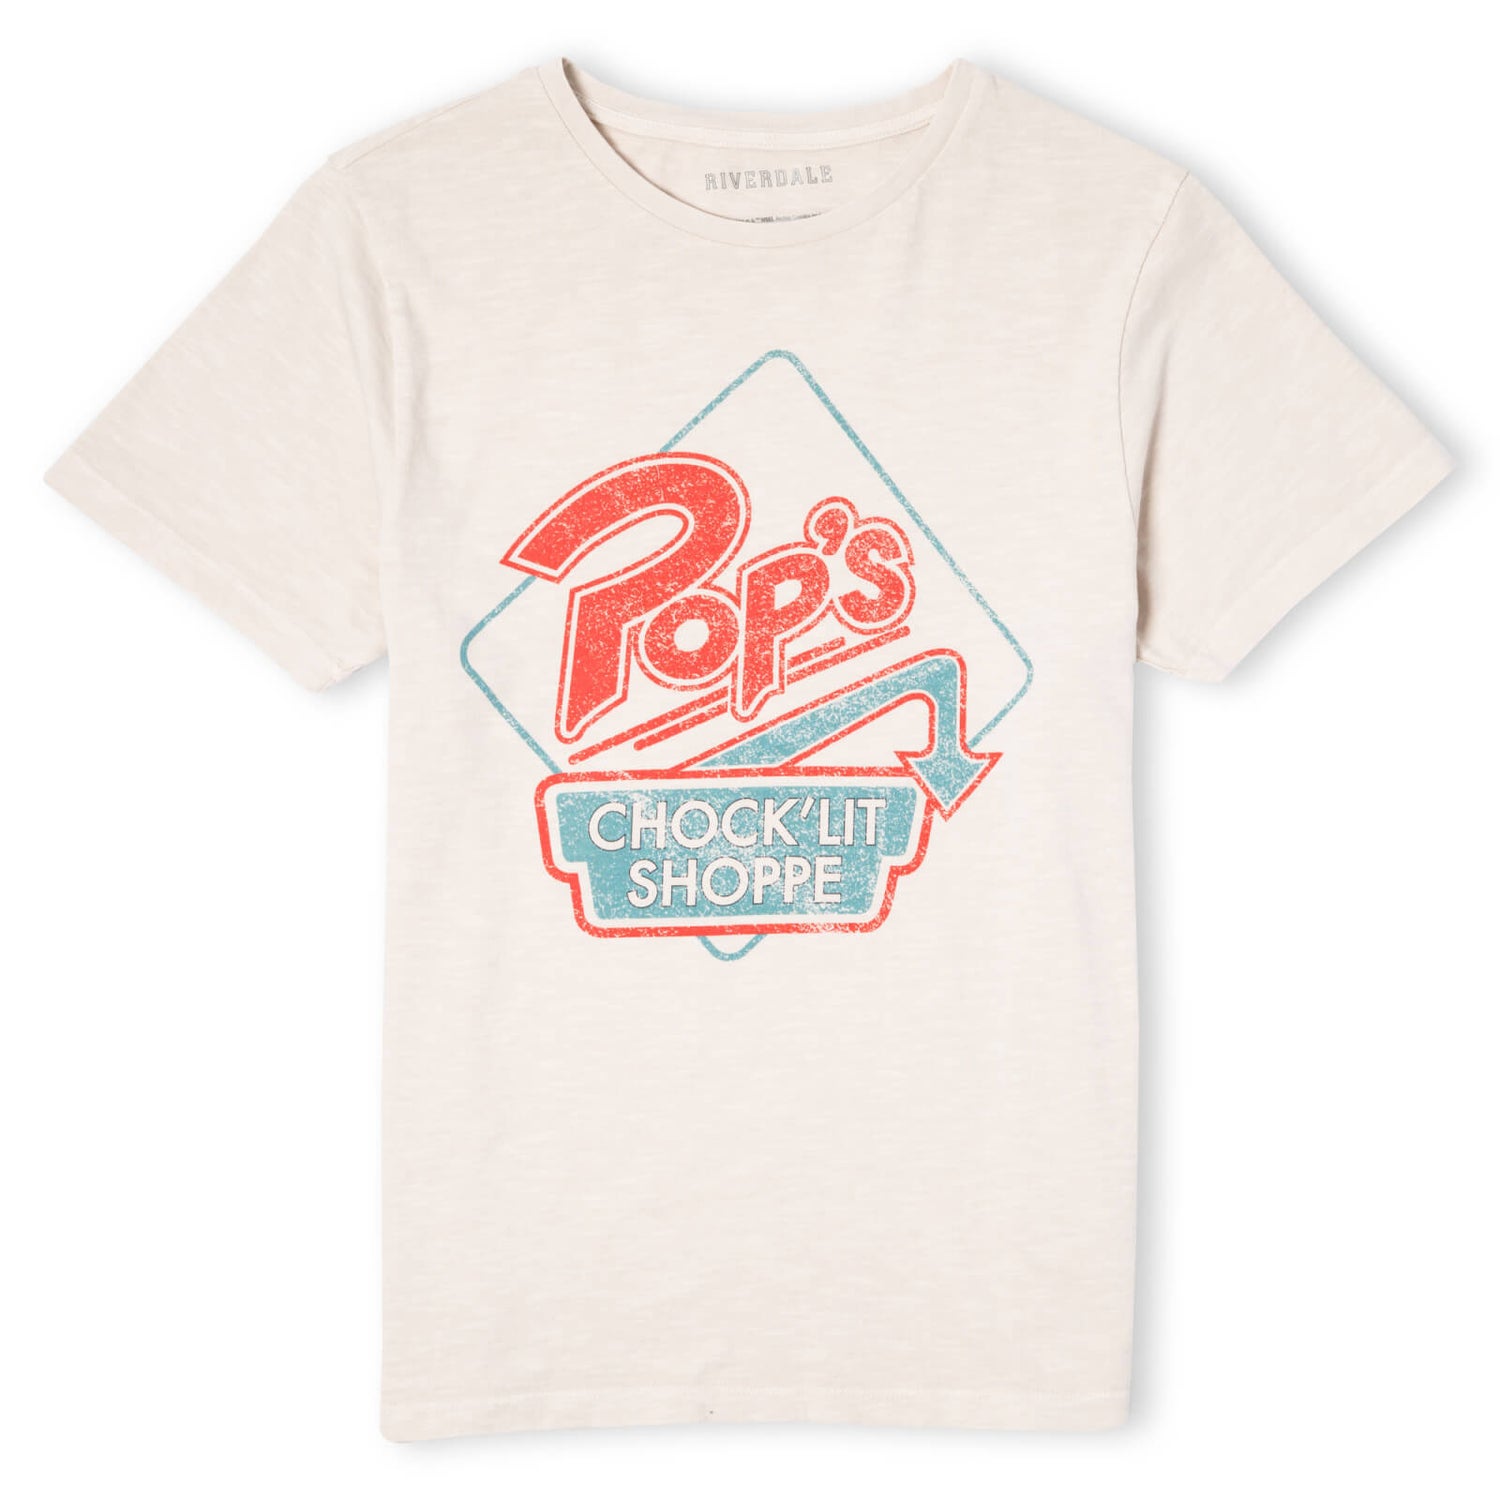 Riverdale Pop's Choclit Shop T-Shirt Unisexe - Blanc Vintage Wash